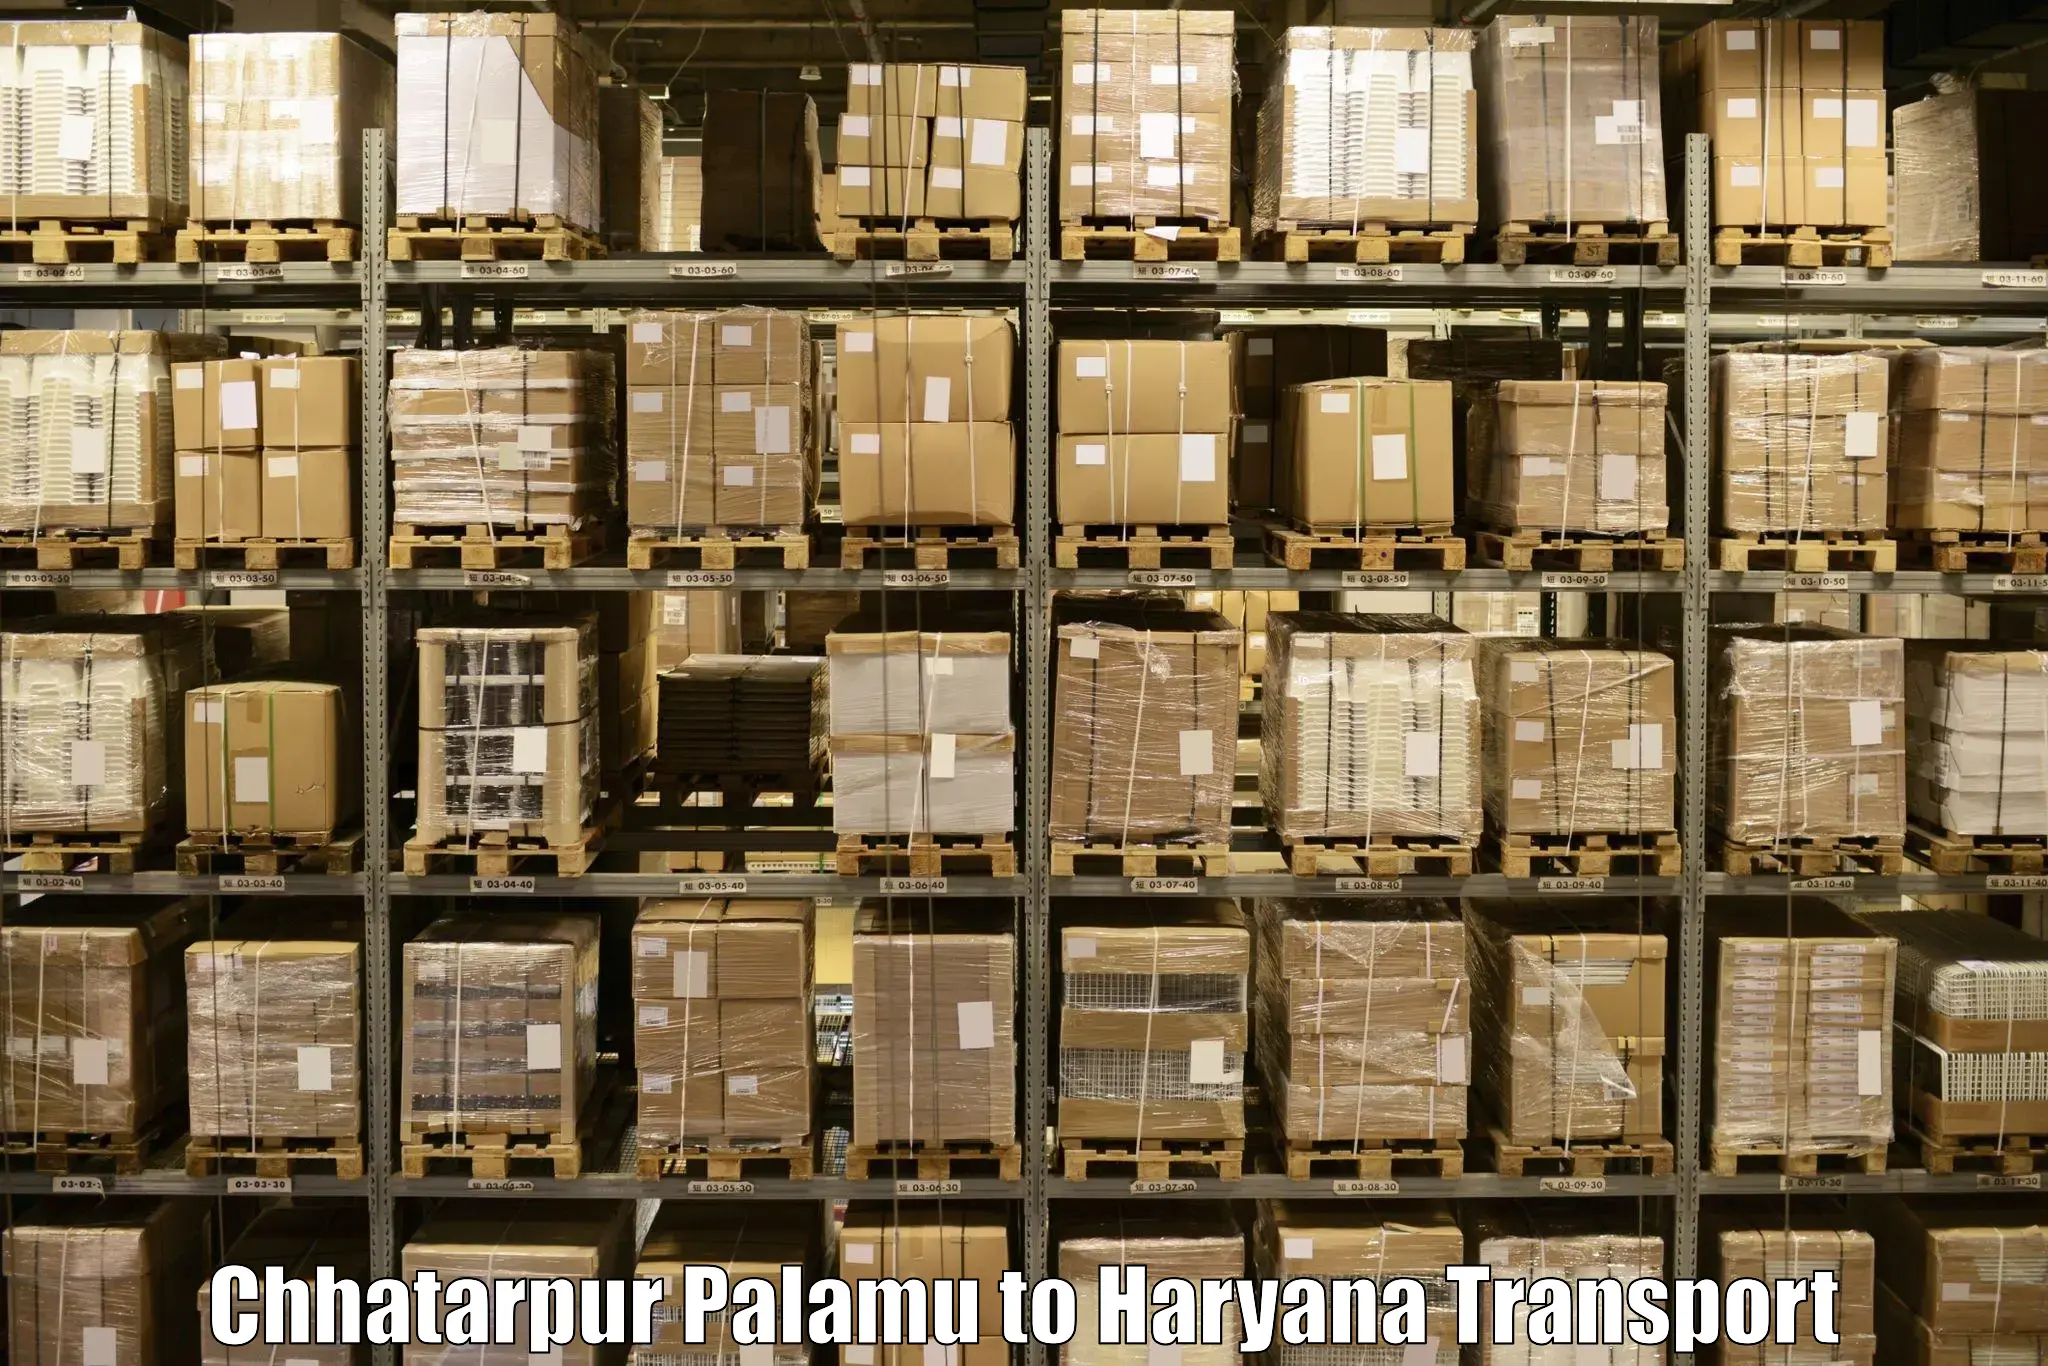 Shipping partner in Chhatarpur Palamu to Barwala